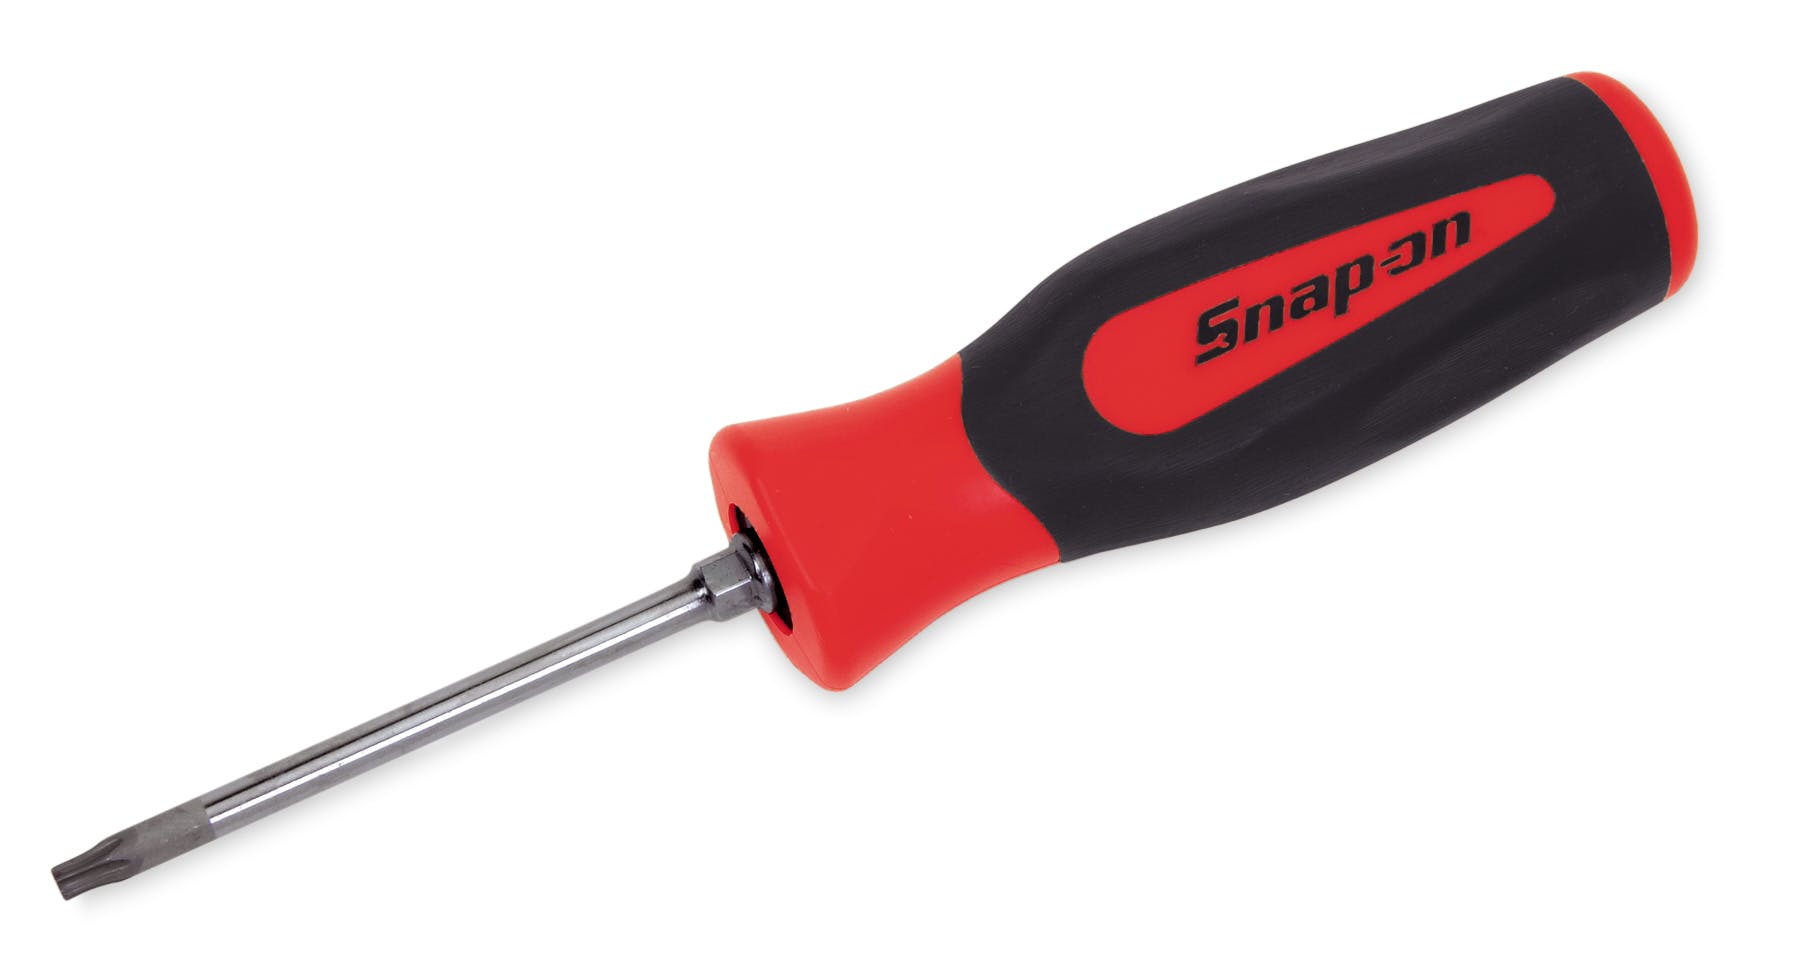 T20 NEW 2018 Snap-on Tools 4 pc Soft Grip Red Mini-tip Torx Screwdriver set T8 